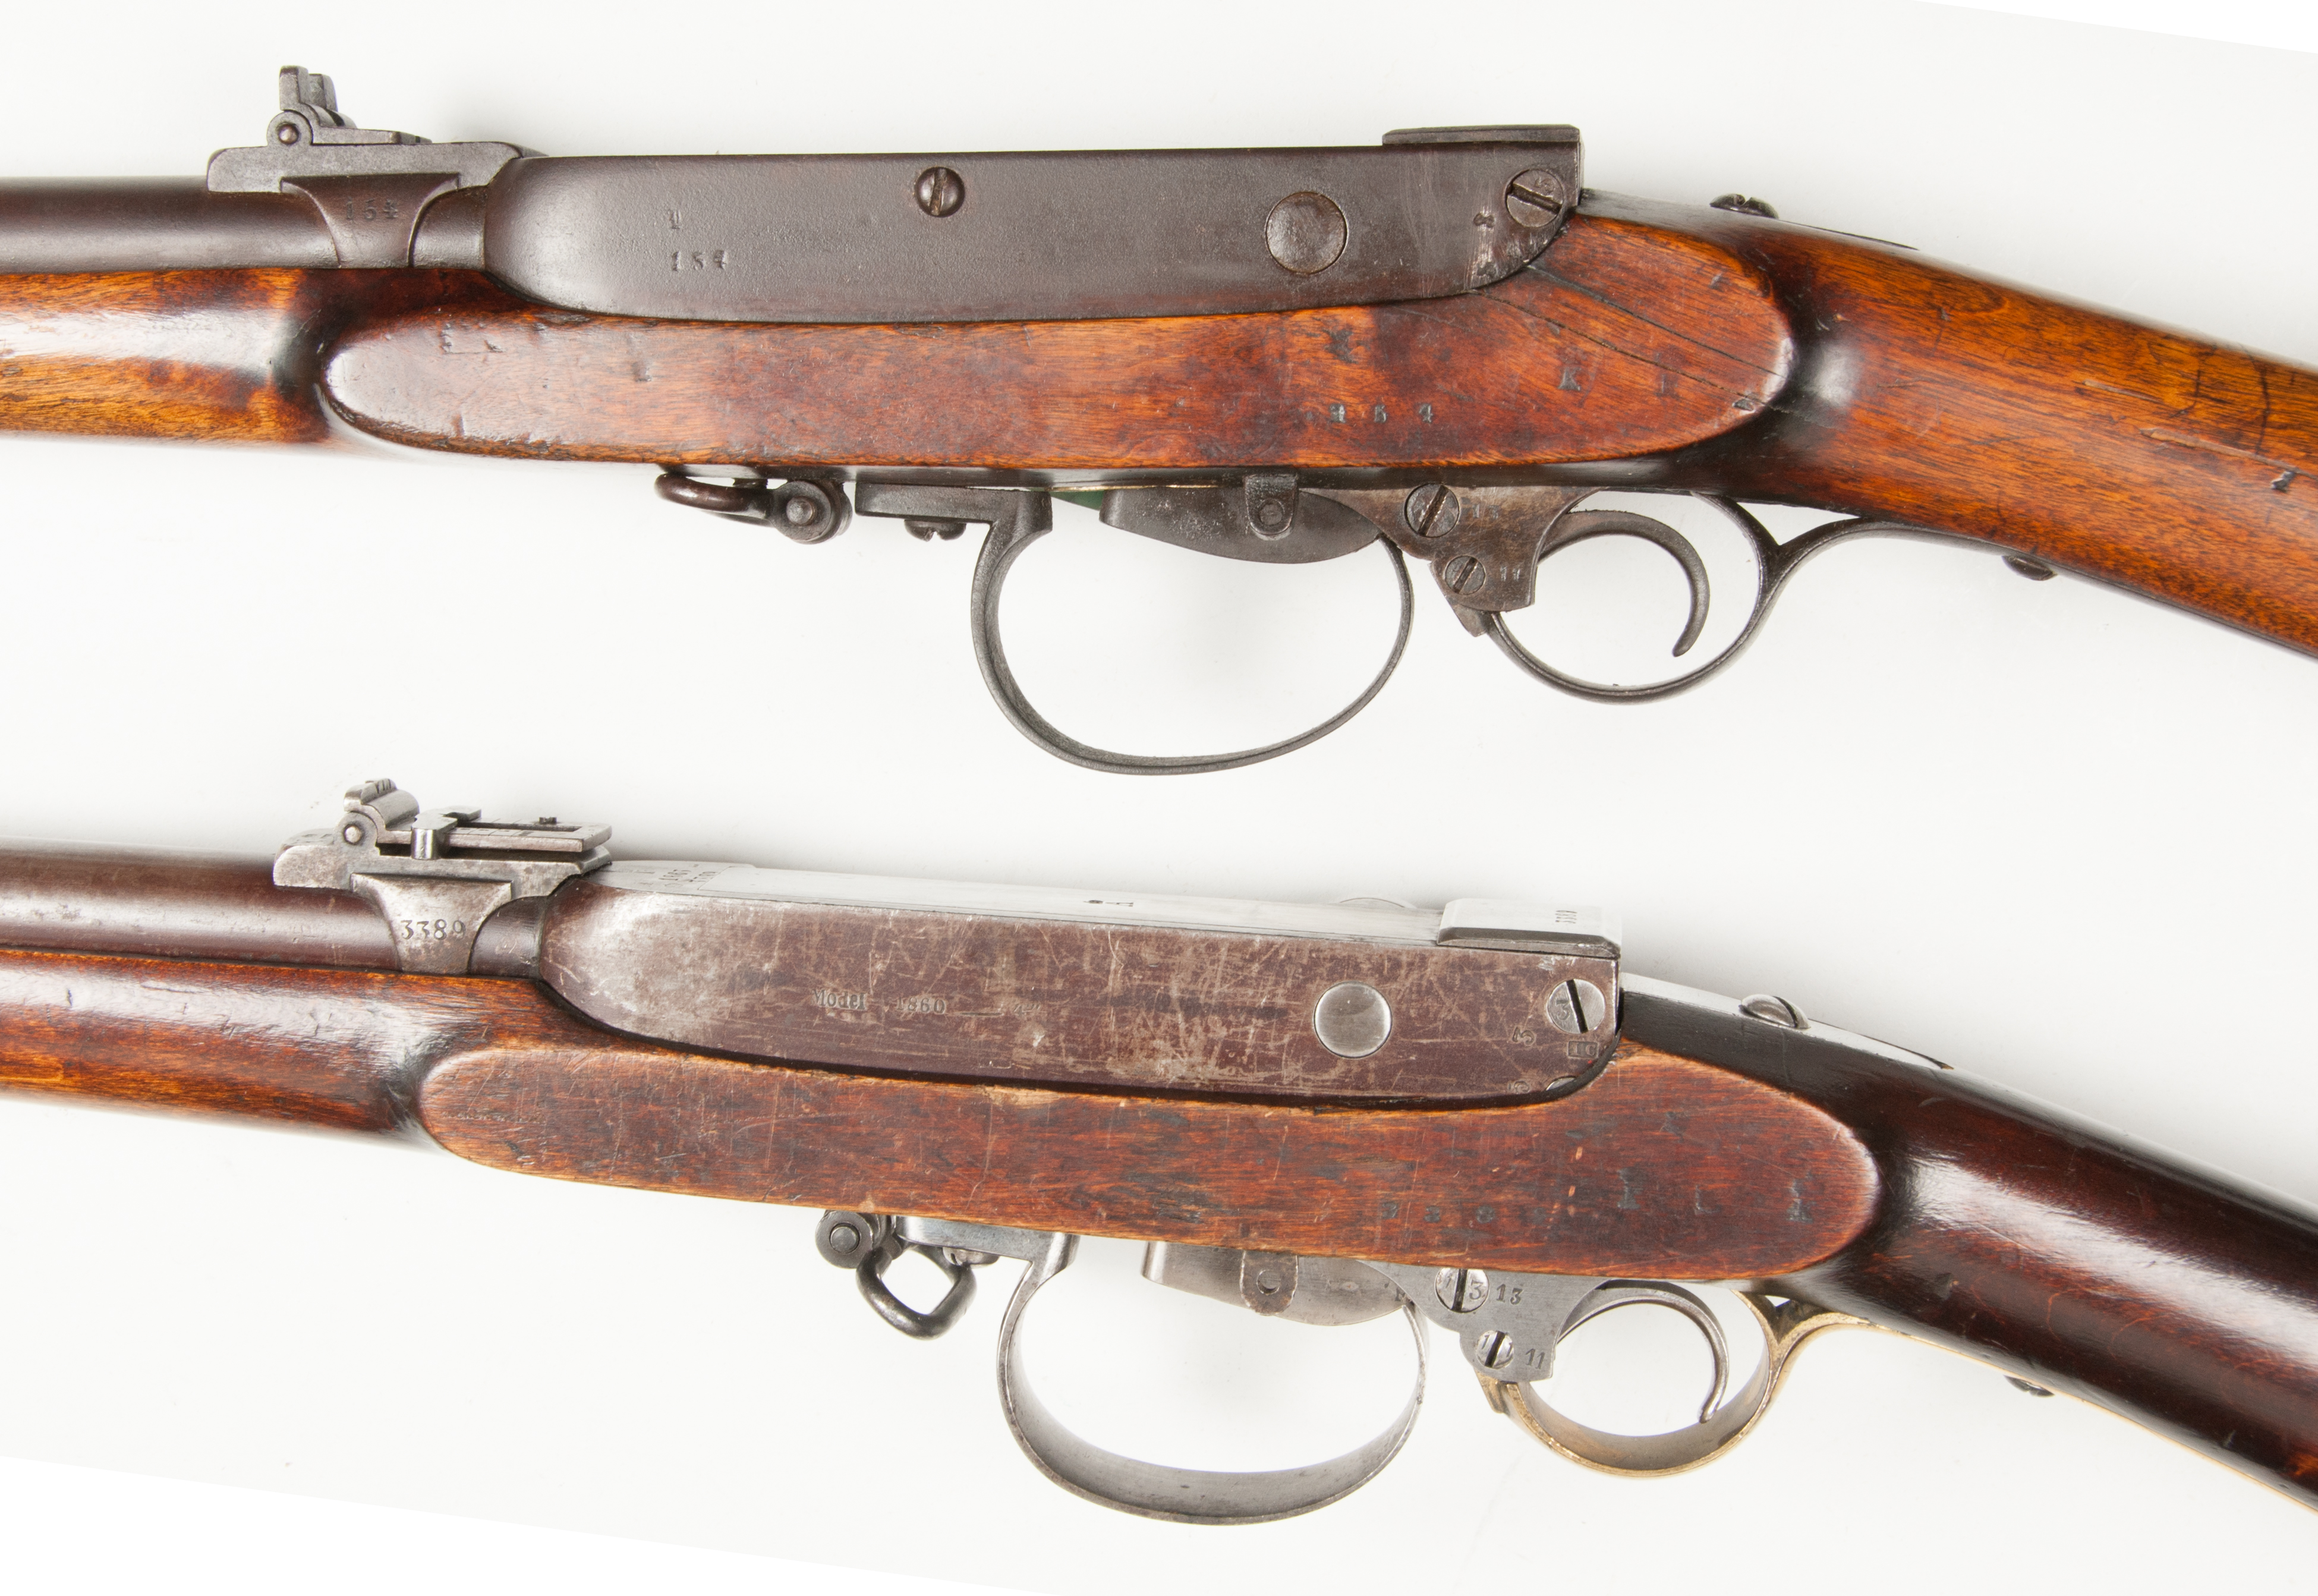 ./guns/rifle/bilder/Rifle-Kongsberg-Kammerlader-M1860-Kort-154-1861-Skytterlag-6.jpg